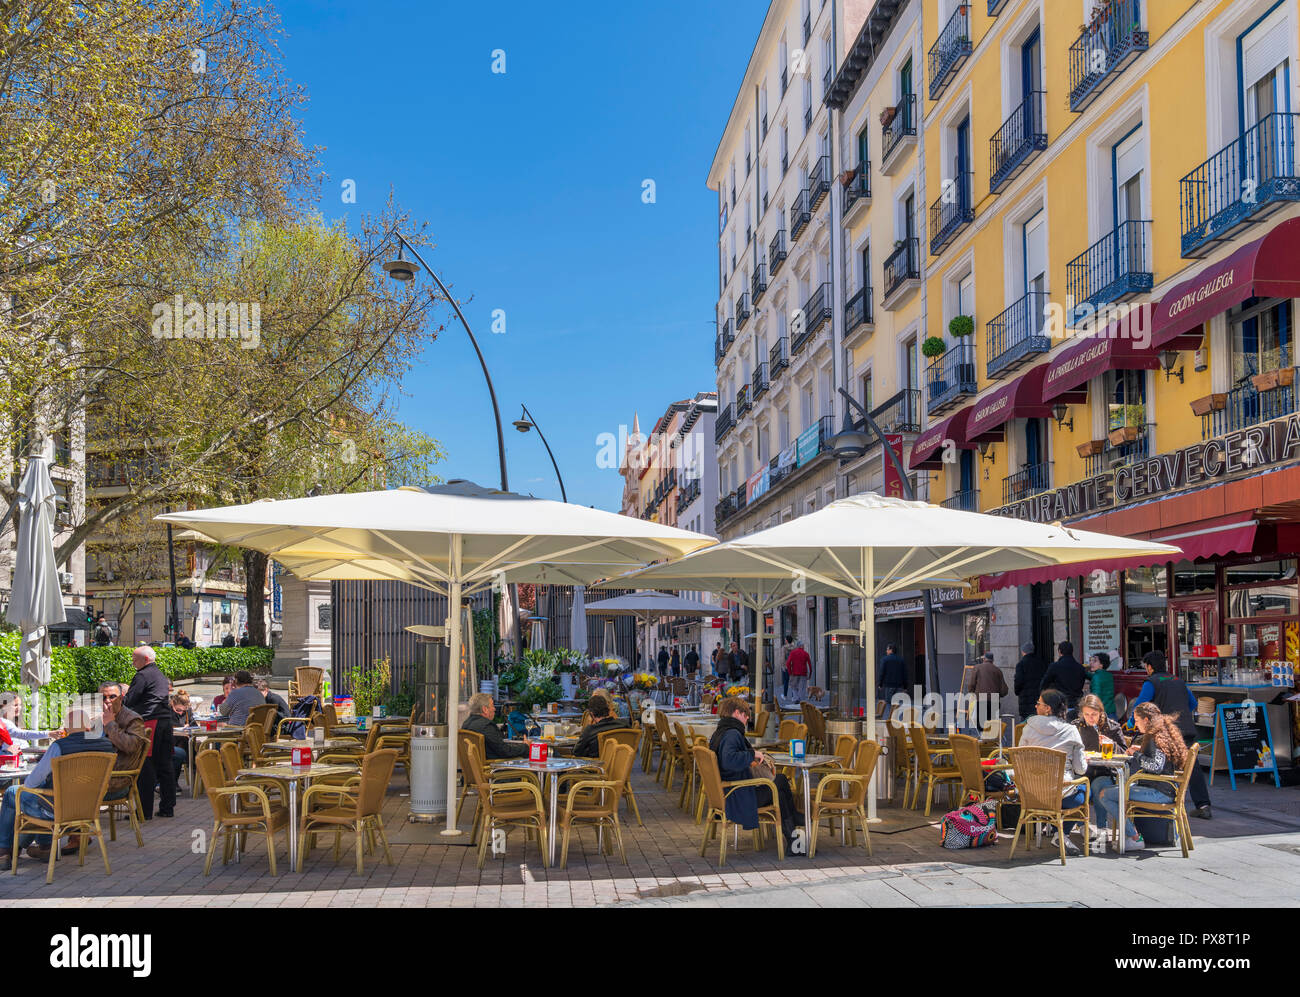 Café avec terrasse sur la Plaza de Tirso de Molina, quartier La Latina / Lavapies, Madrid, Espagne Banque D'Images